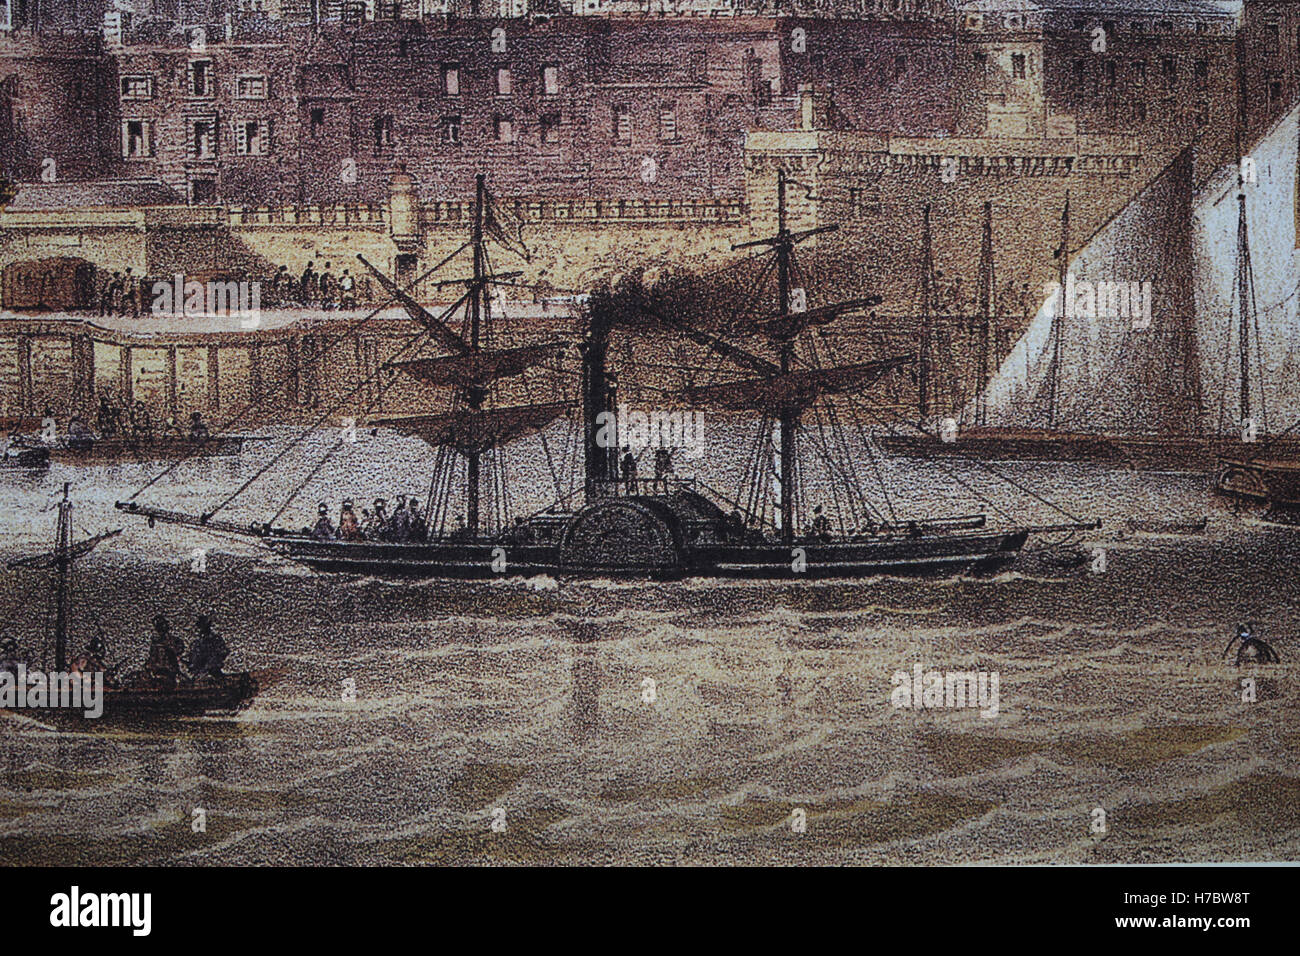 Steamboat. Il fiume Tamigi. Incisione di Charles Riviere, xix secolo. Londra Foto Stock